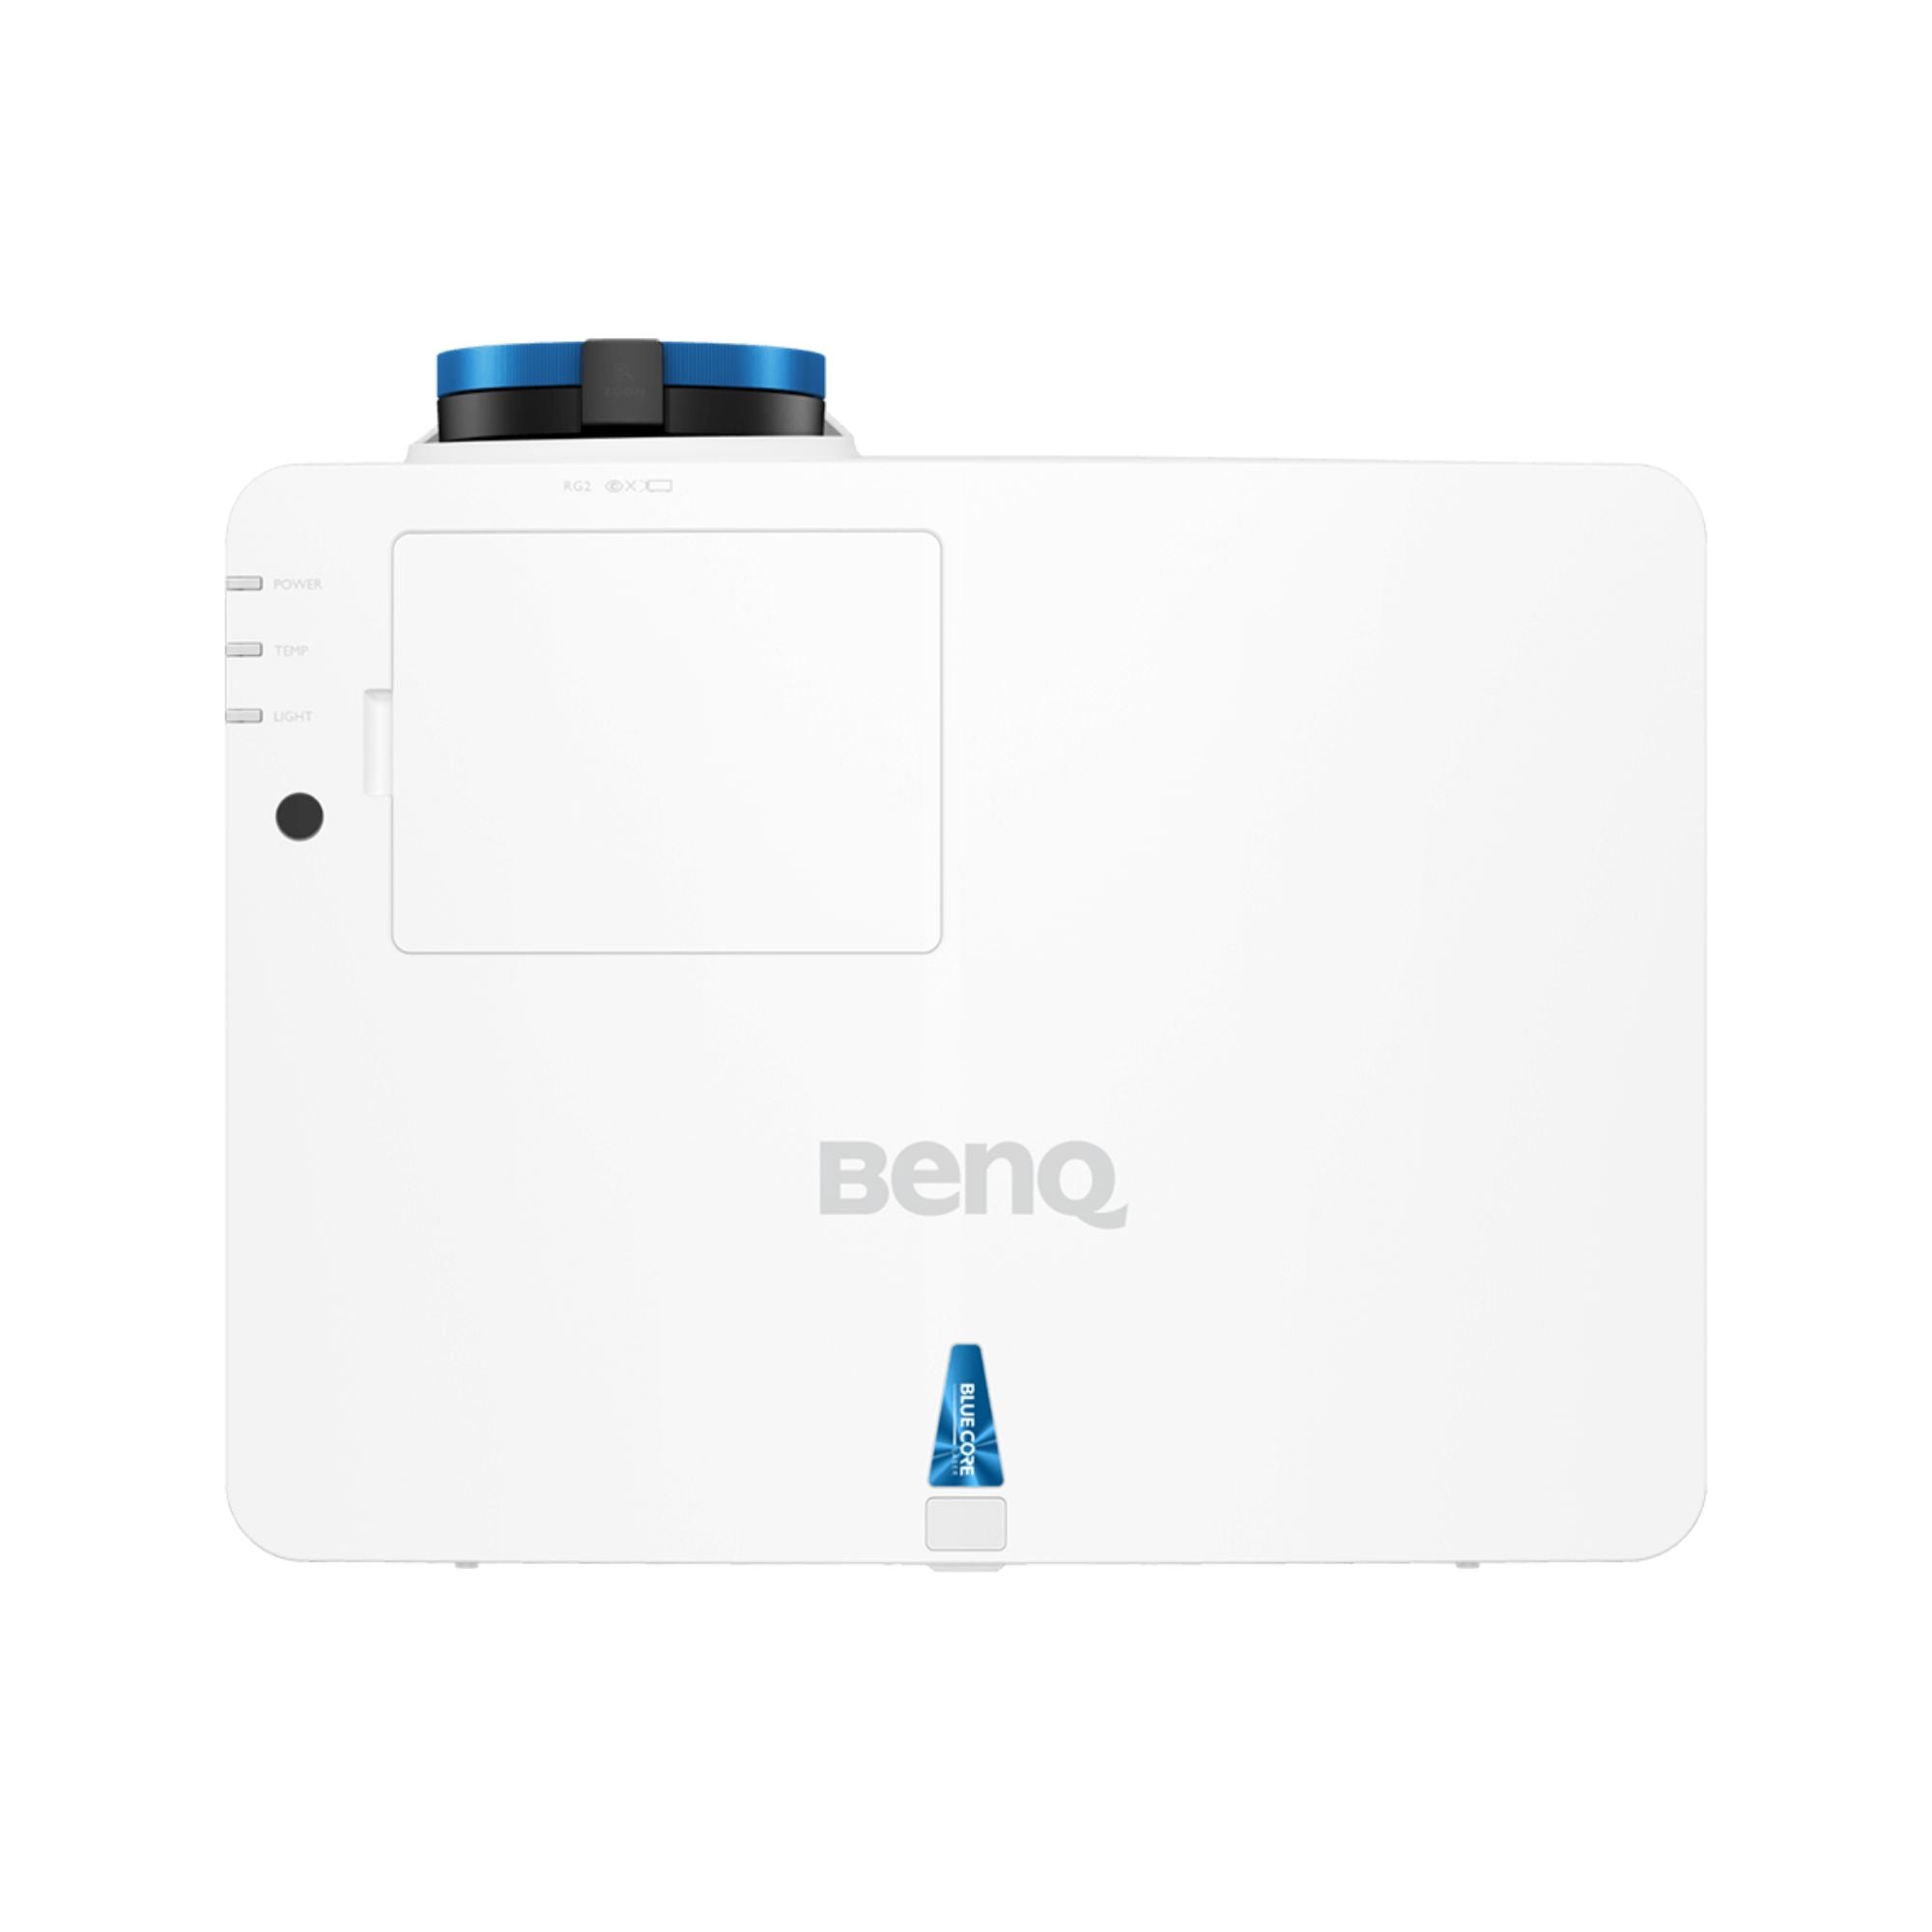 BenQ LU930 - 5000 Lumen WUXGA Laser DLP Projector, BenQ, Projectors - AVStore.in